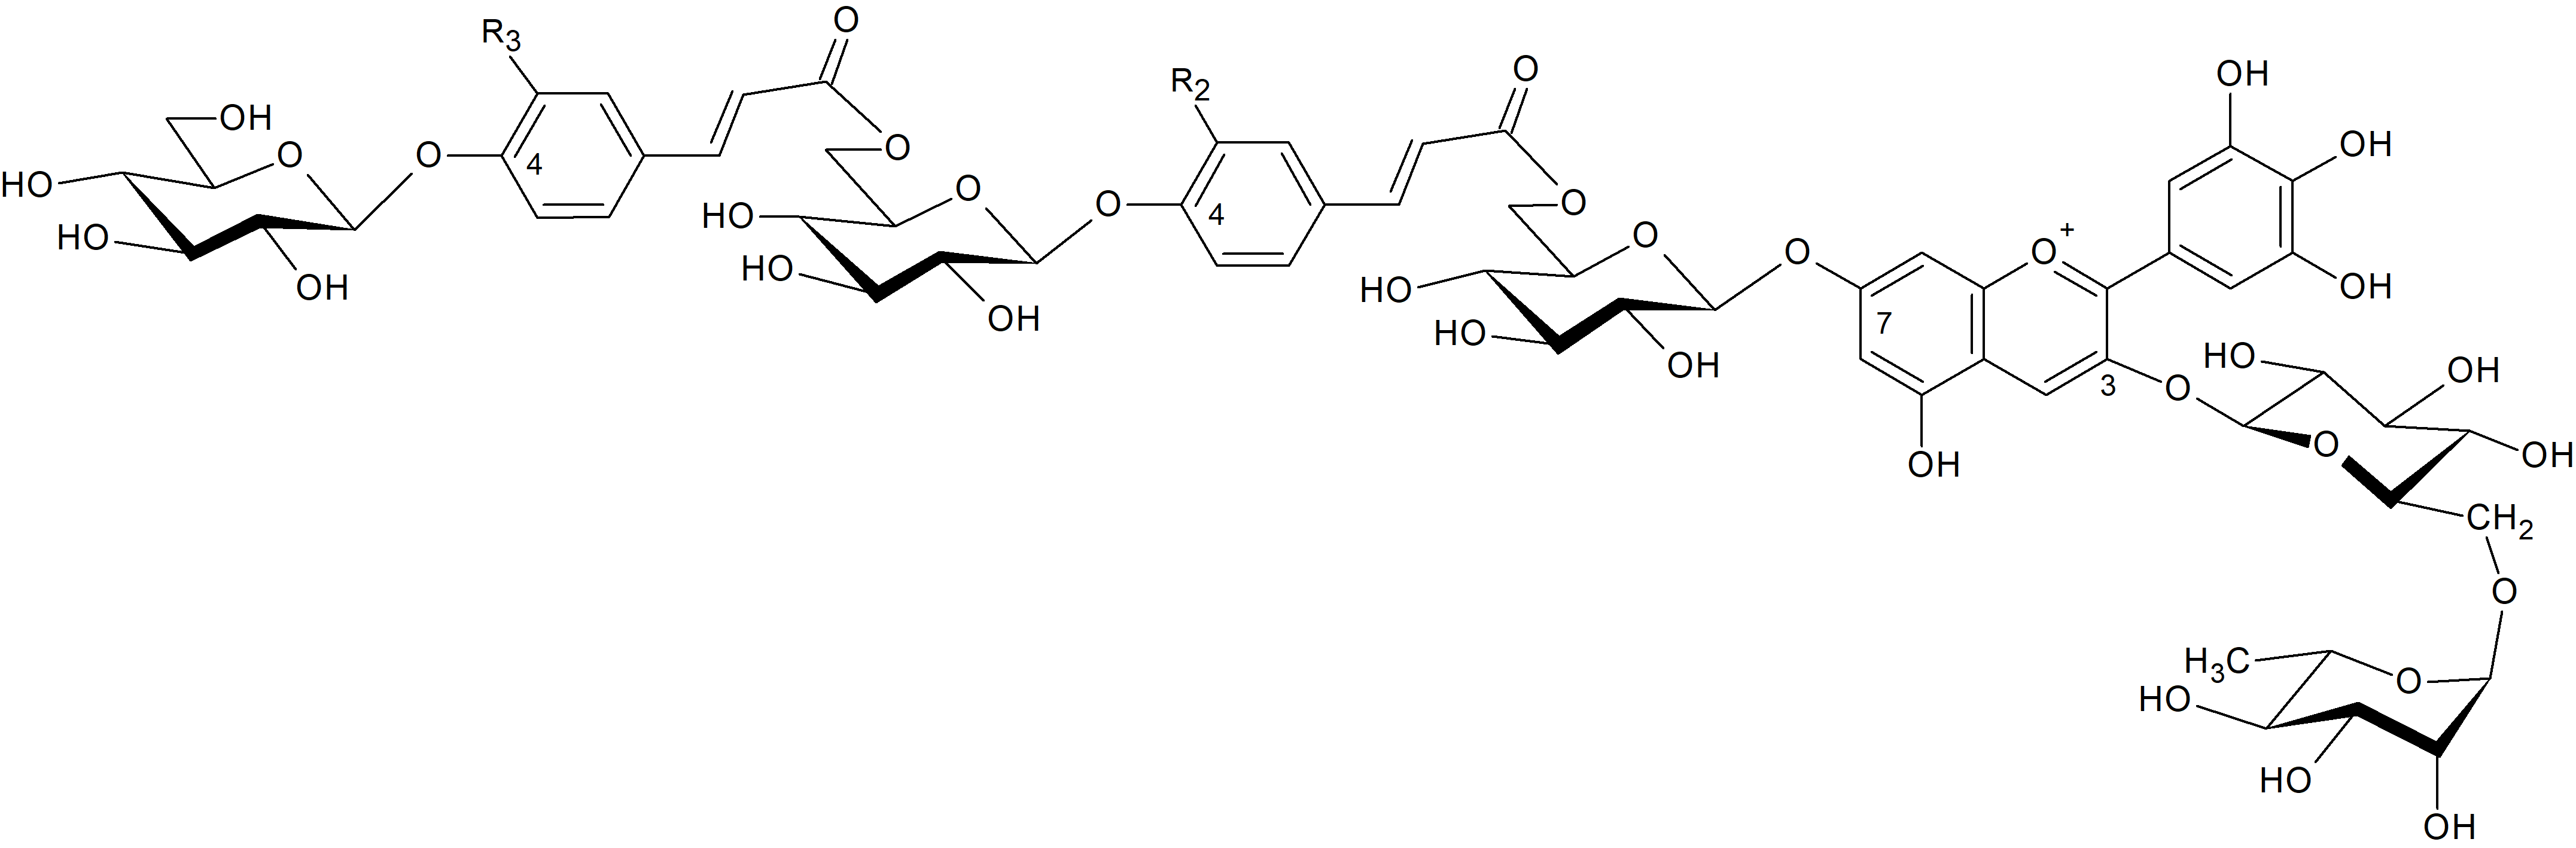 Delphinidin 3-O-rutinoside-7-O-[6-(4-[6-(4-glucosylcaffeyl)glucosyl]caffeyl)glucoside]